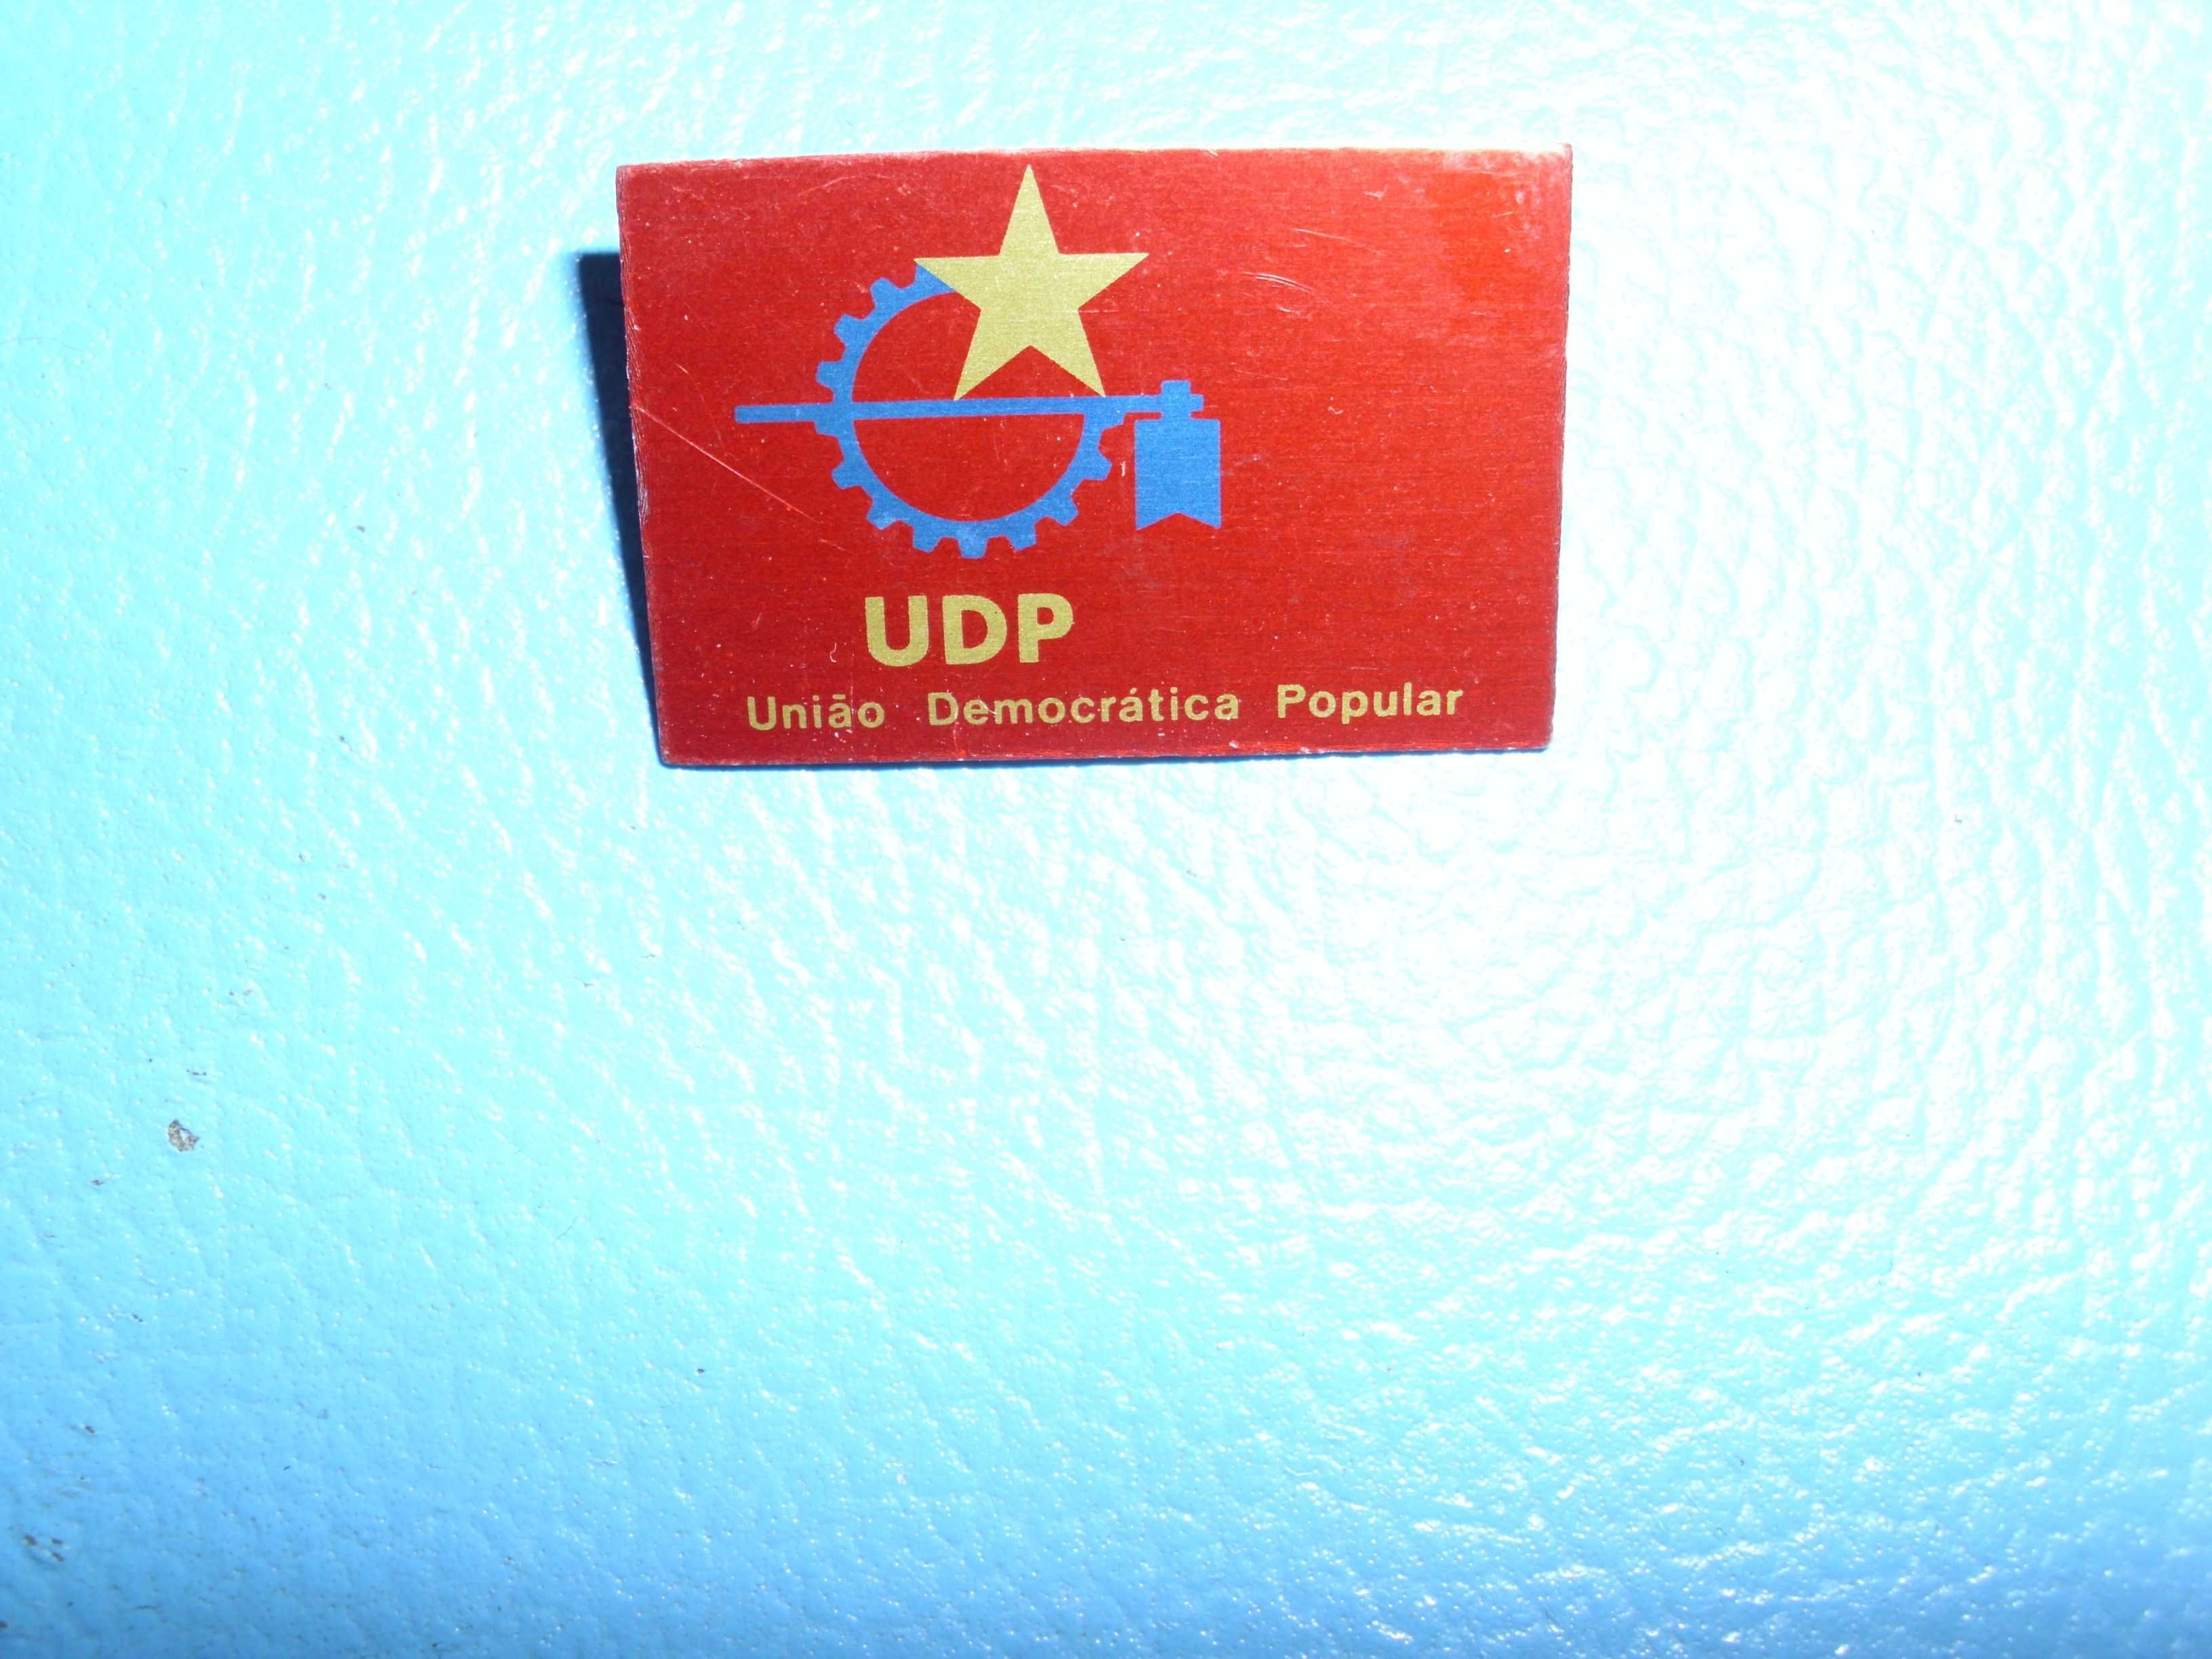 Pin raro de metal do Partido Português UDP de 1974